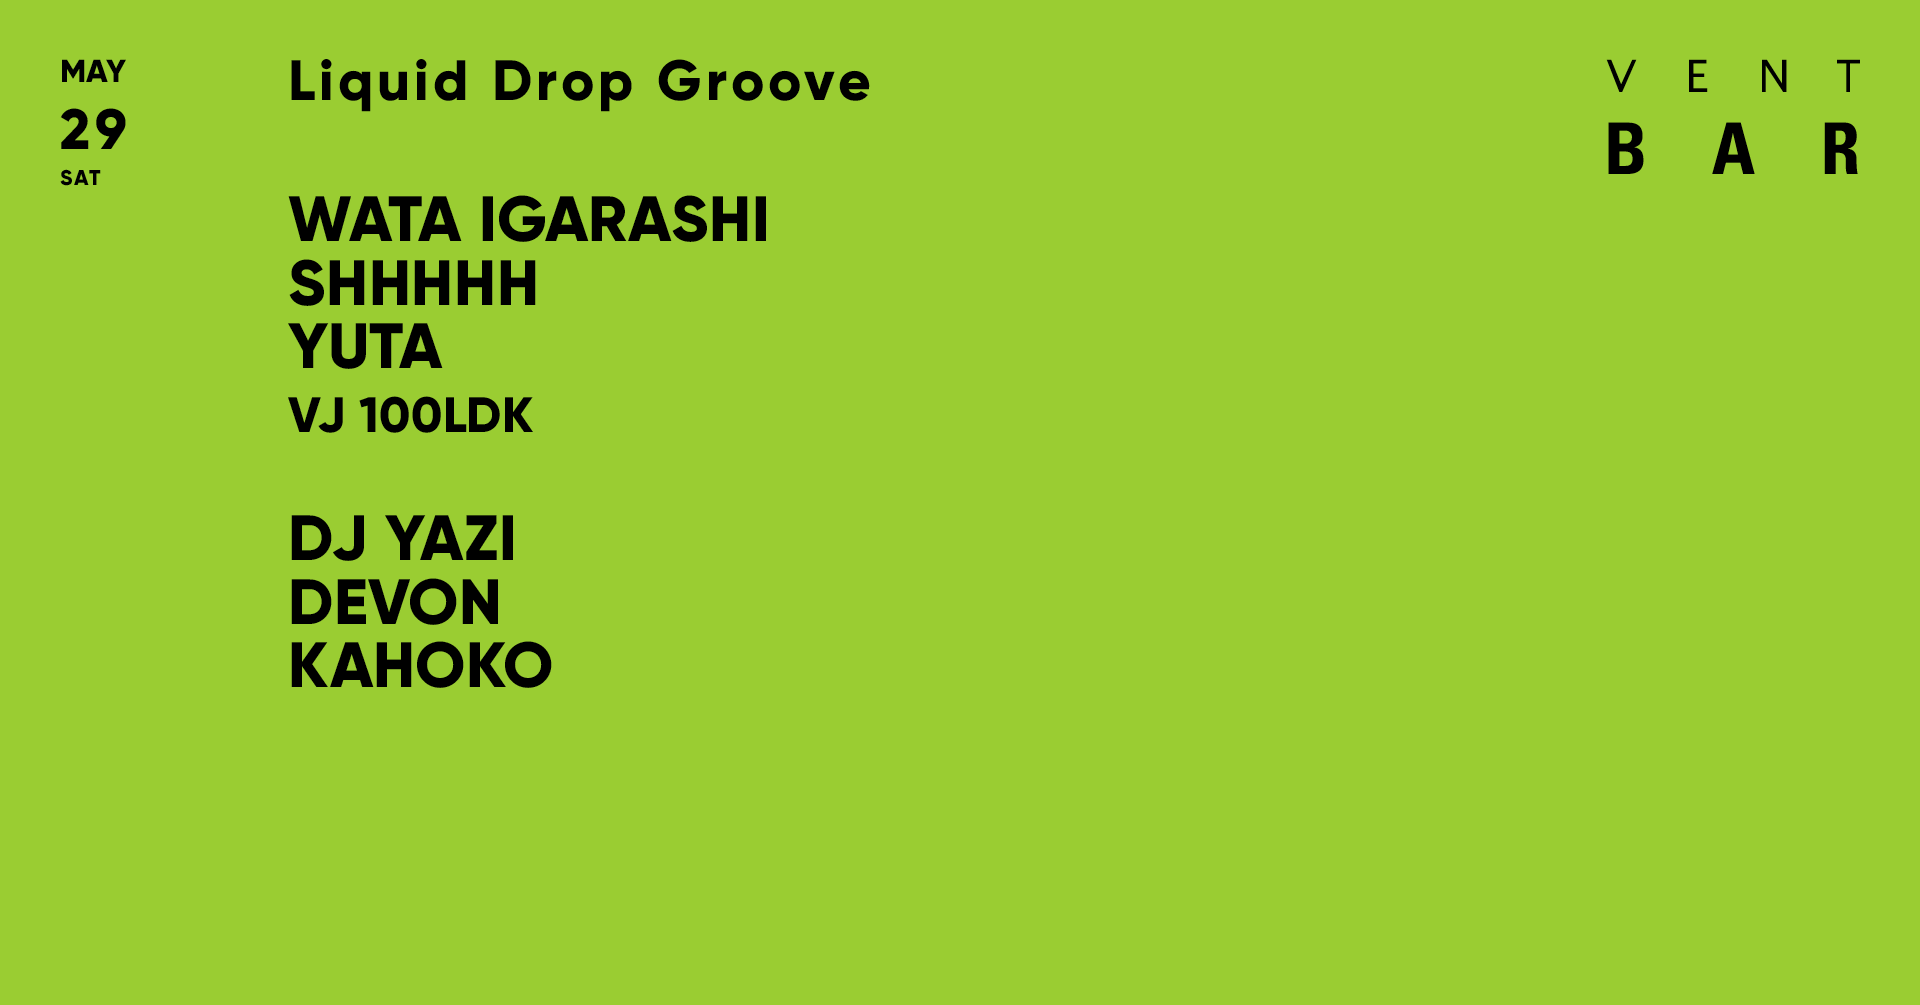 Liquid Drop Groove / VENT BAR